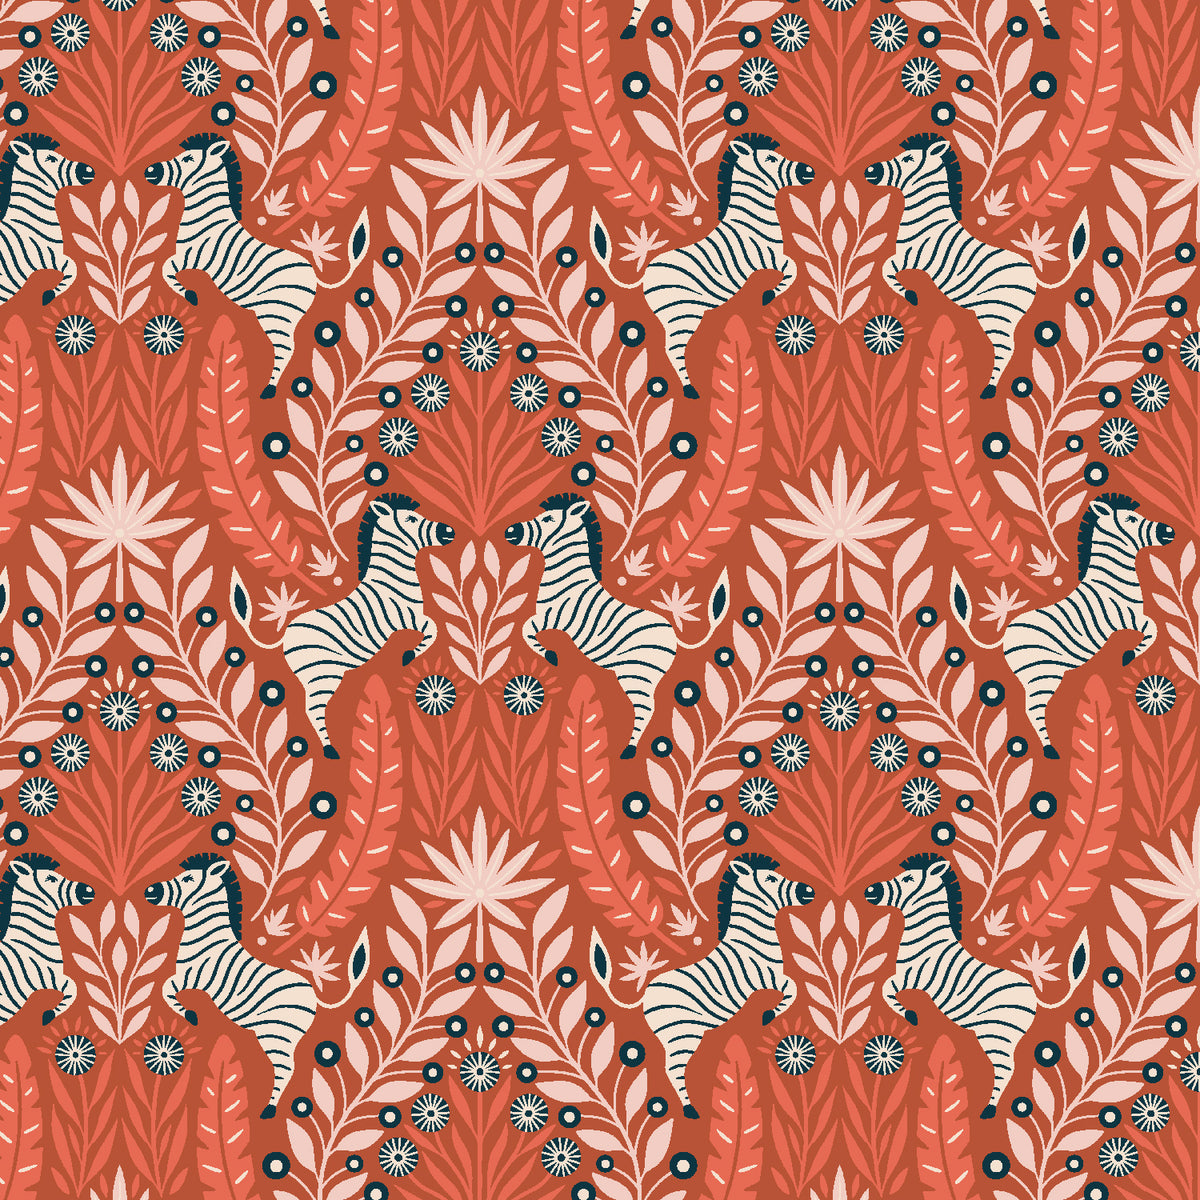 Savanna Quilt Fabric by Cotton+Steel - Zesty Zebra in Serengeti Orange/Multi  - CM201-SE2